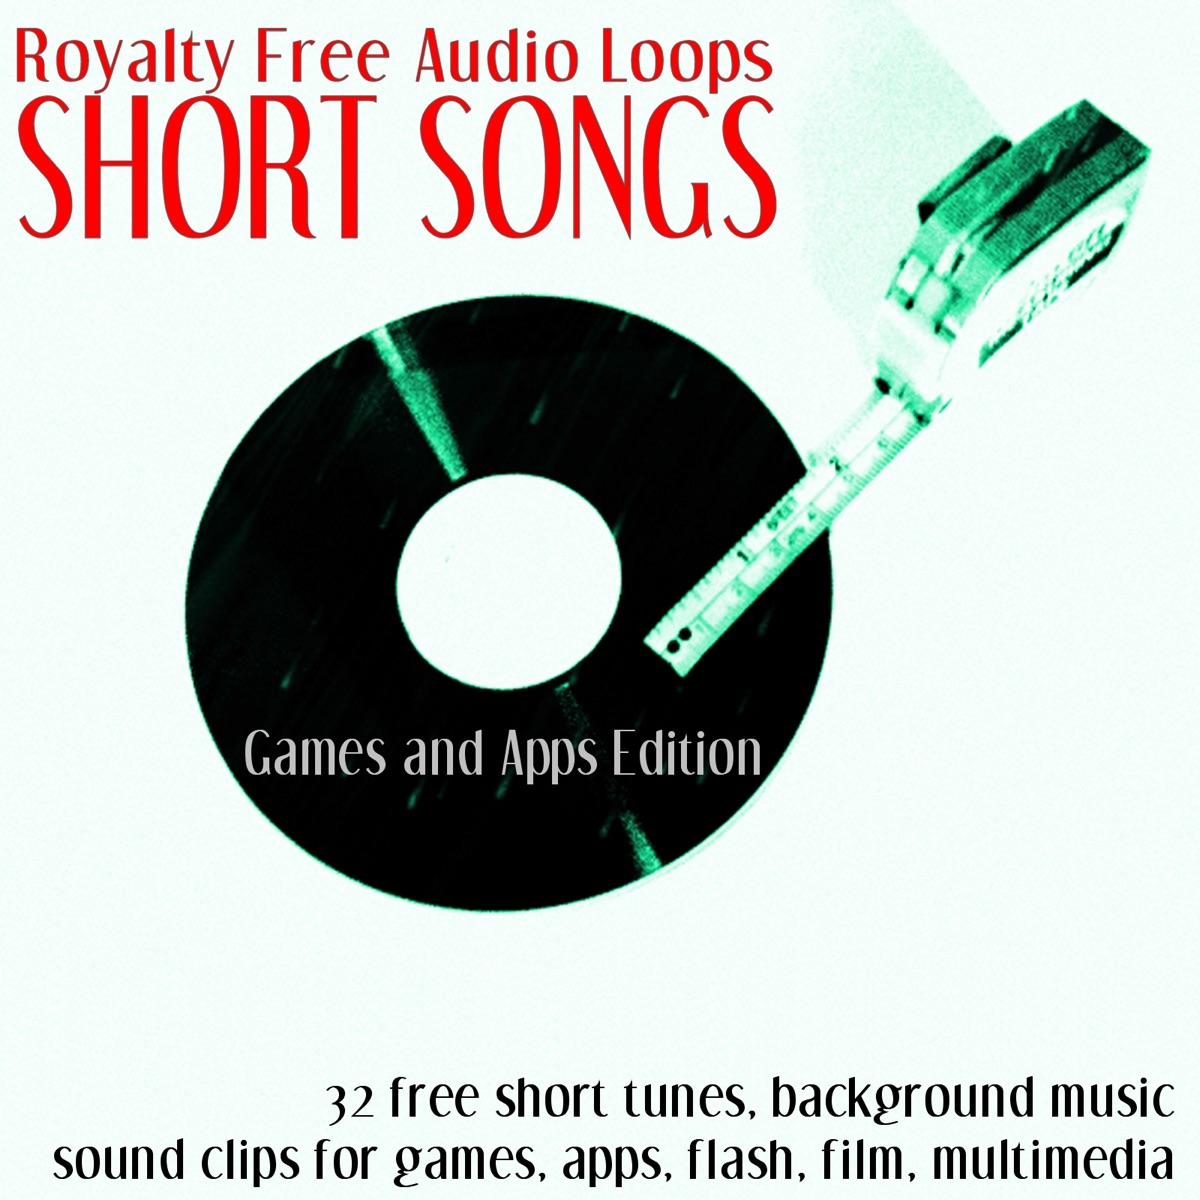 Free audio loops